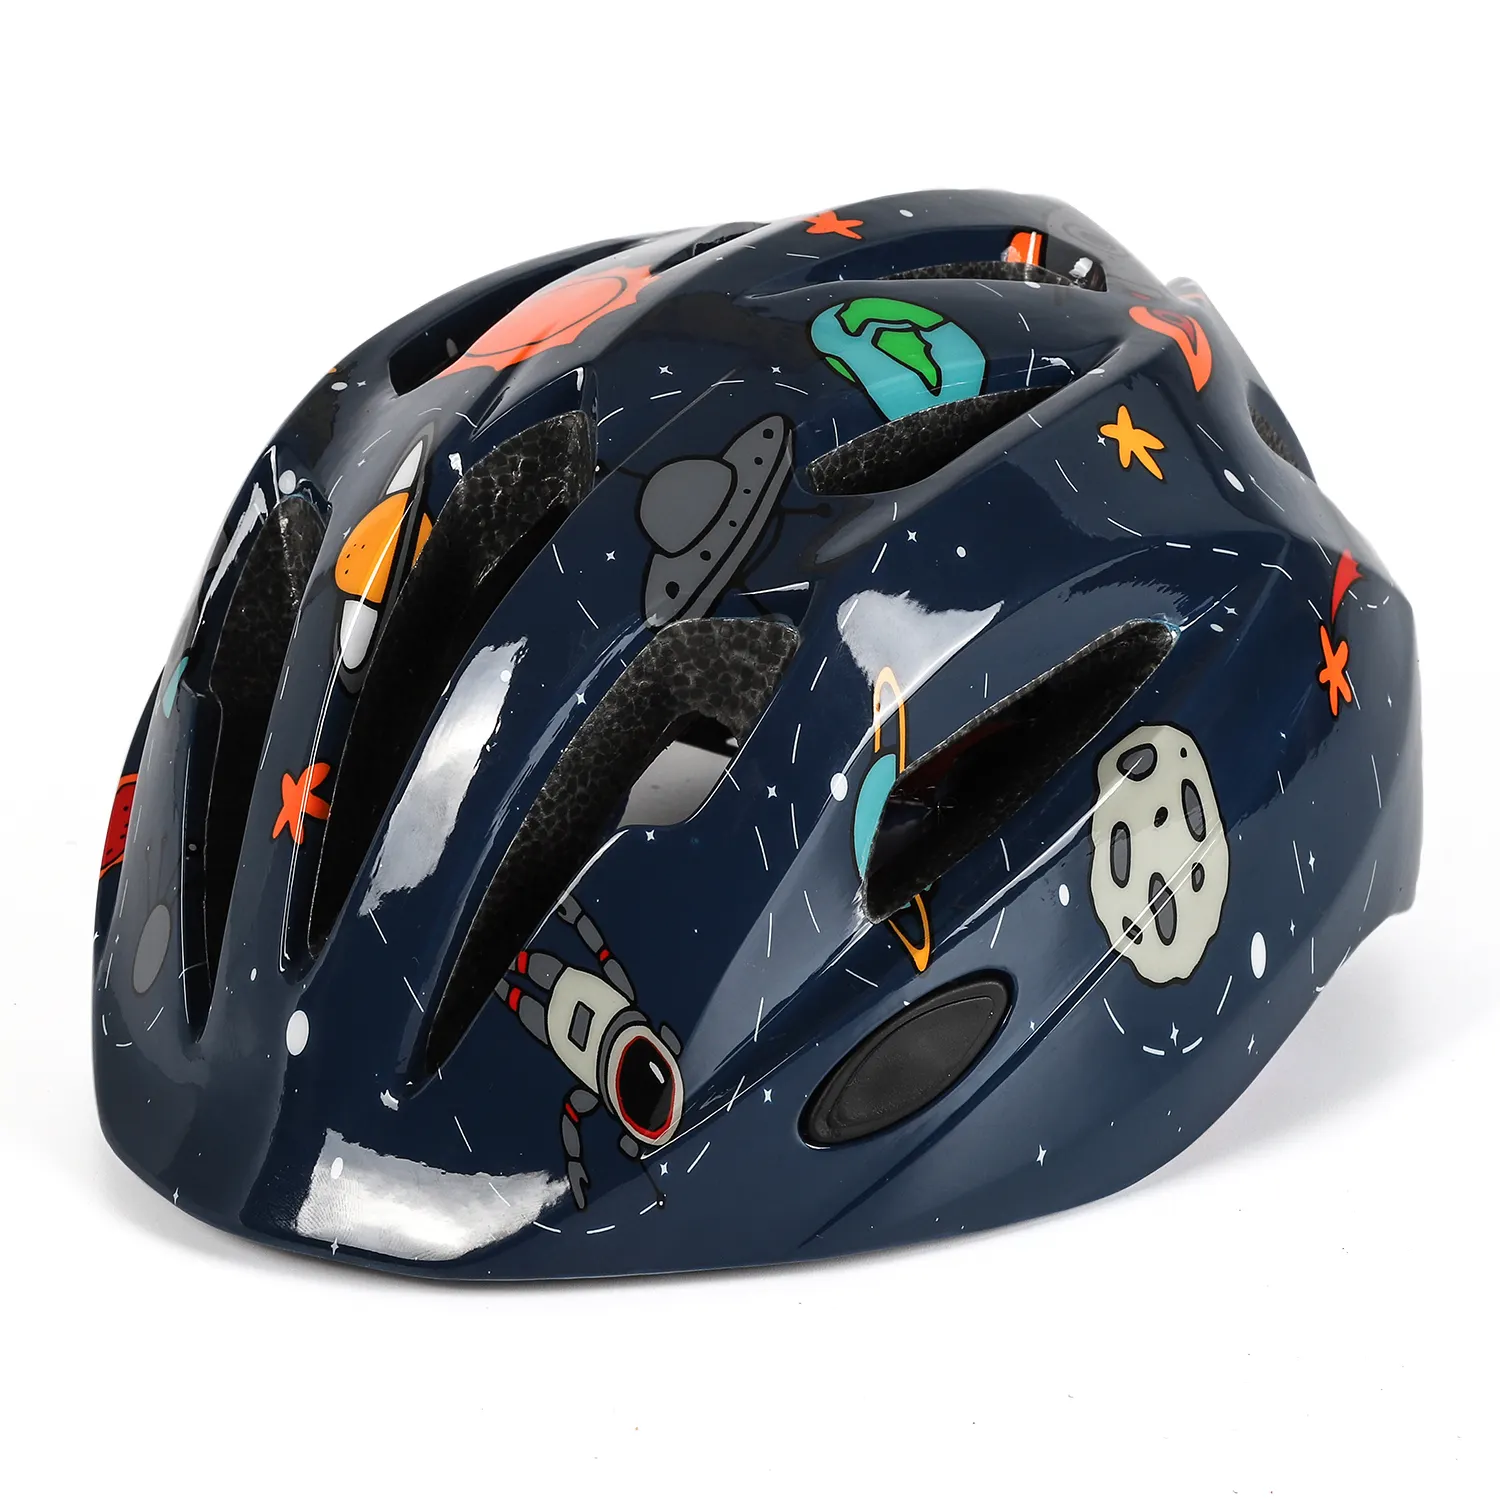 Nouveau casque de vélo réglable pour enfants, casque de vélo de sport, Skateboard, Scooter, protection de sécurité, casque de vélo pour enfants